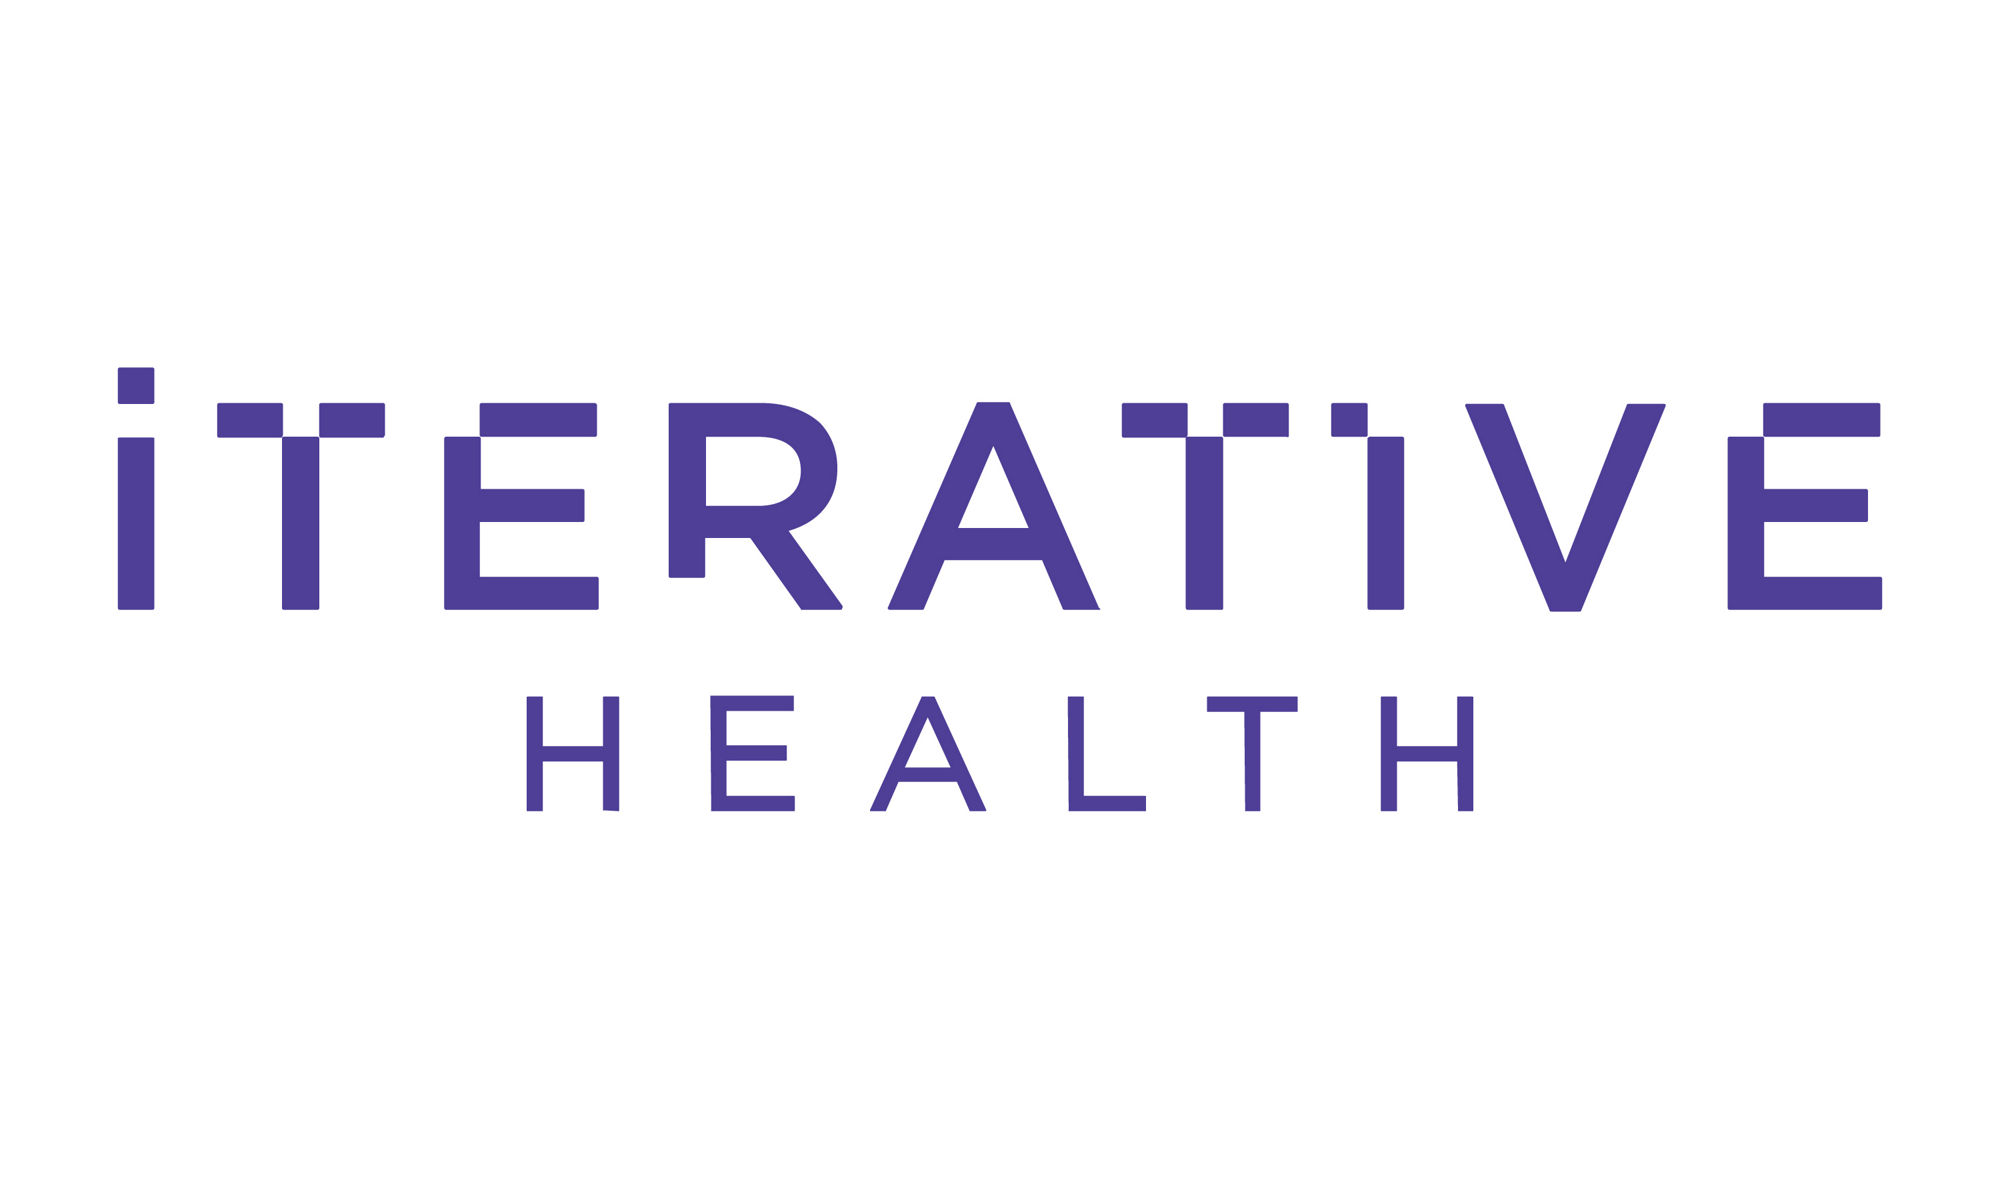 Iterative Health company logo